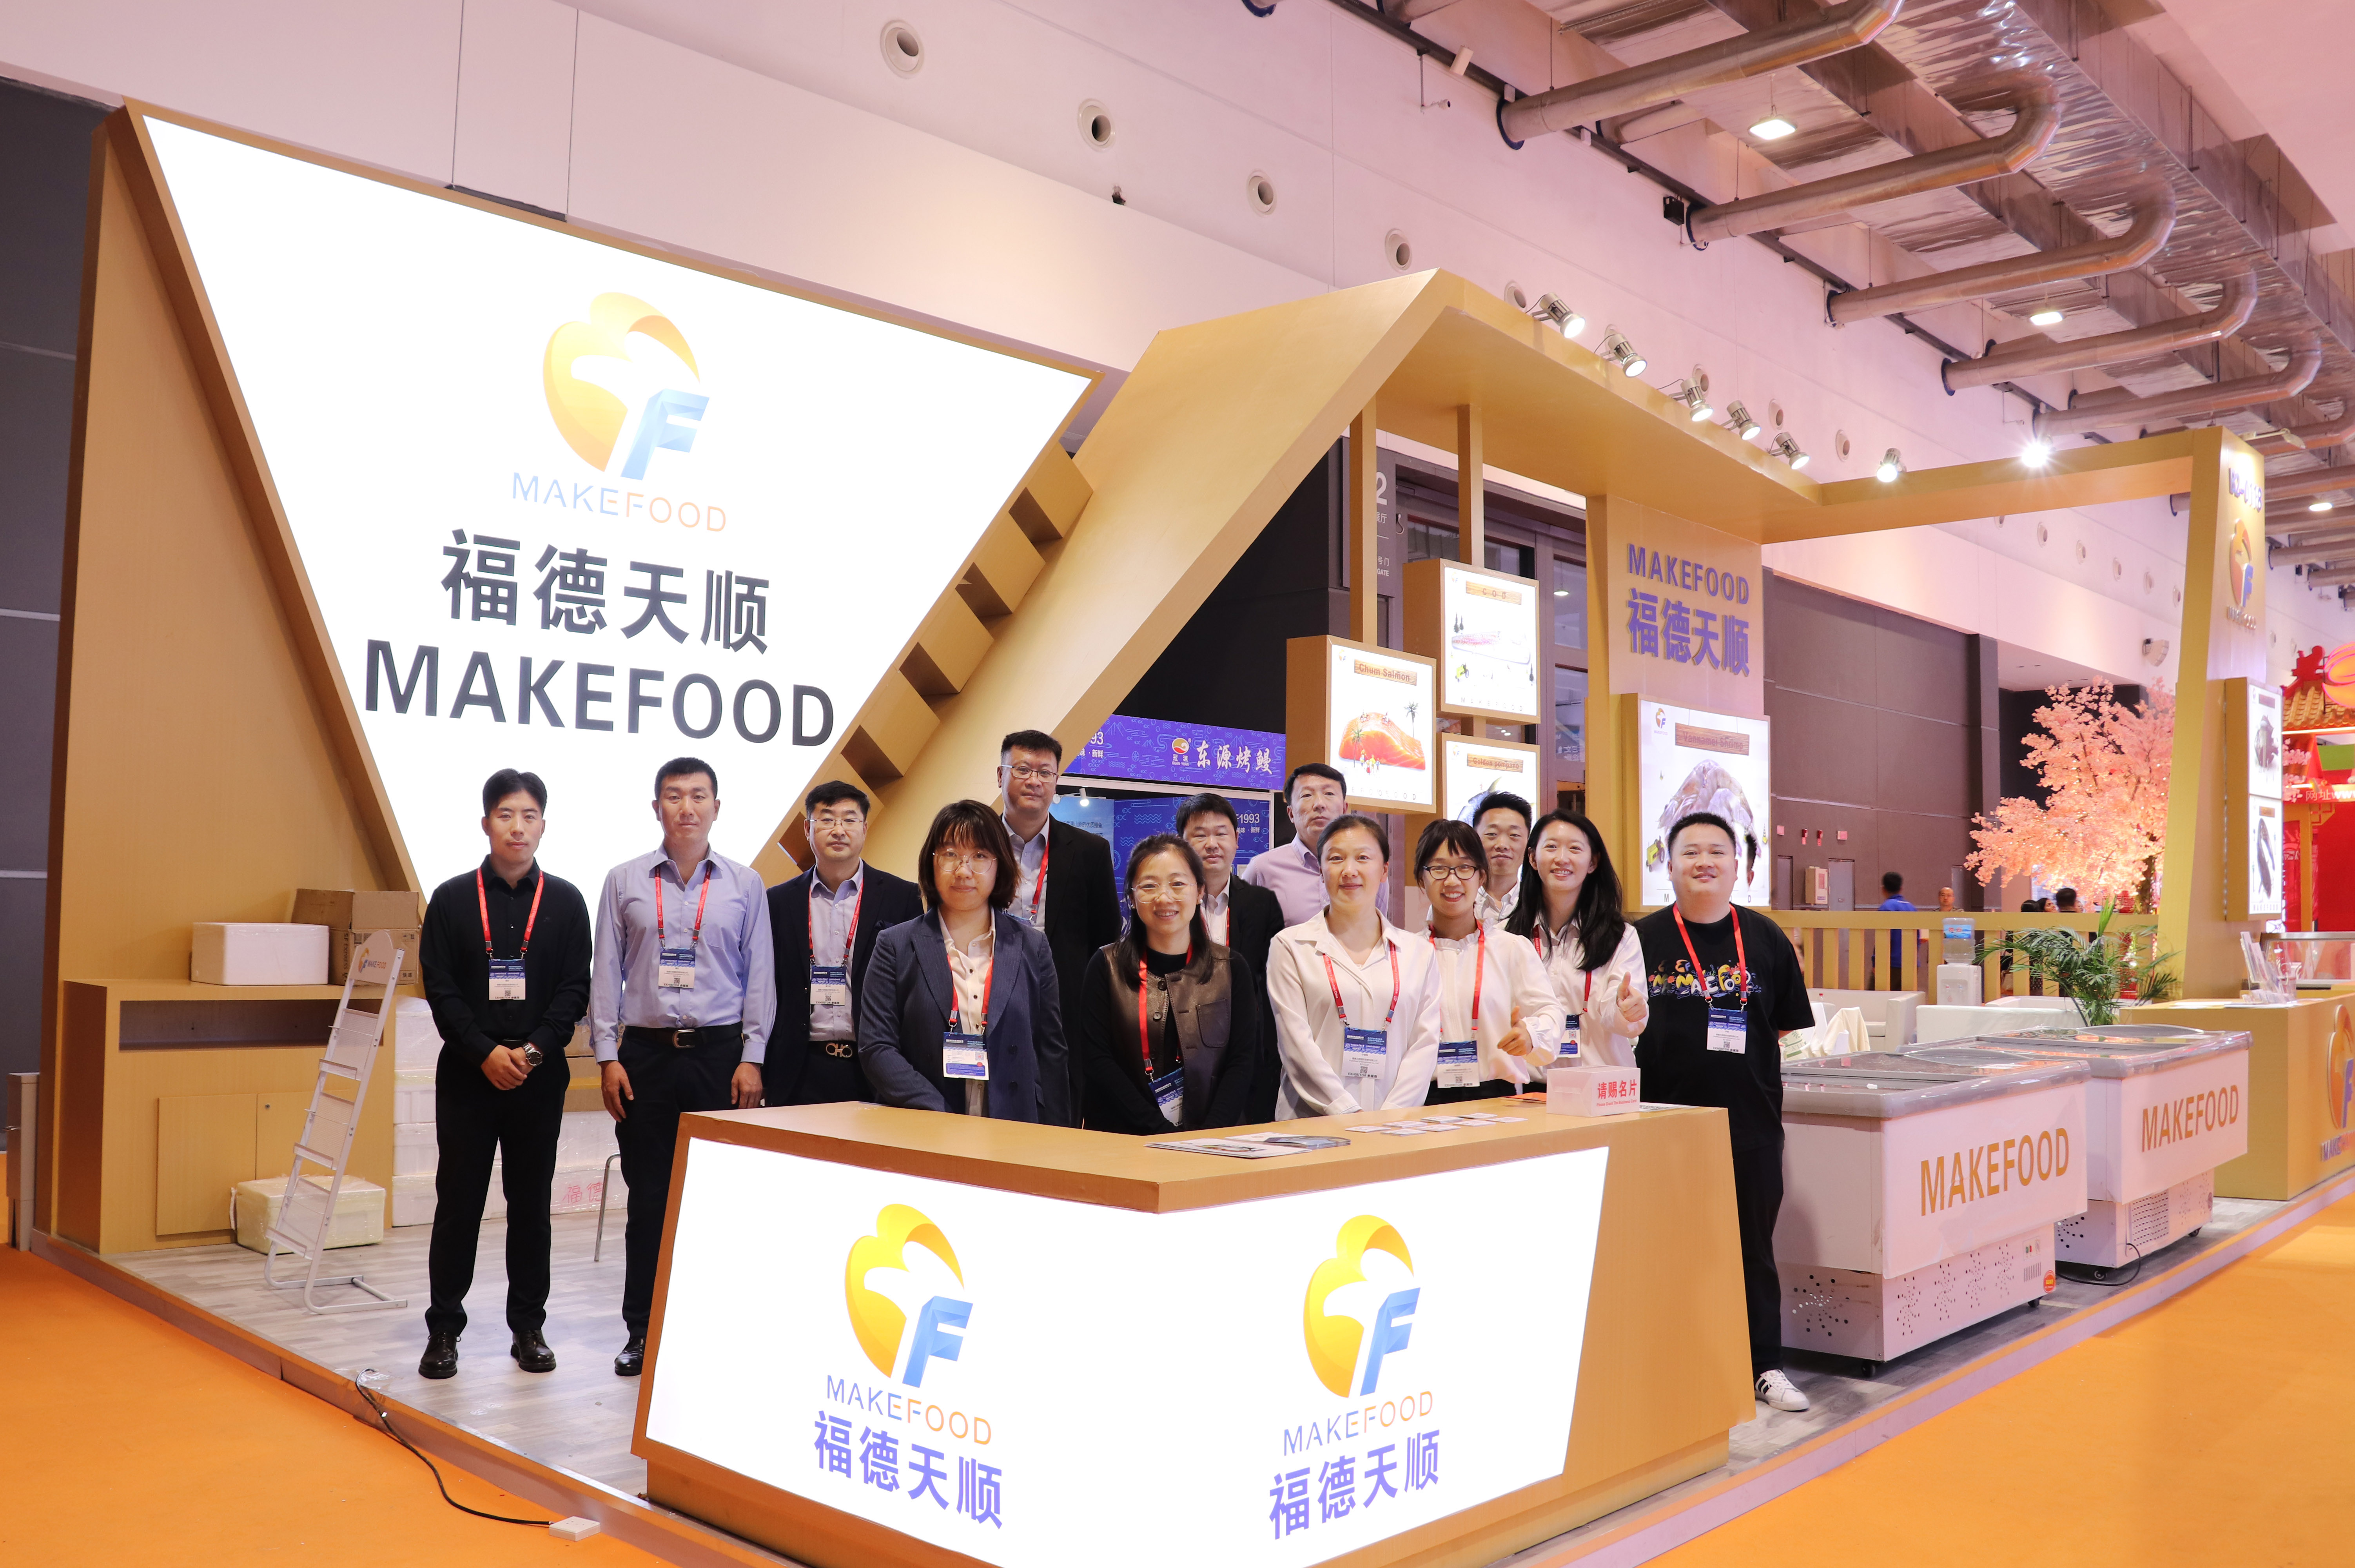 MAKEFOOD ngadamel penampilan anu saé di Qingdao Maritime Expo pikeun ngabahas inovasi industri sareng pangwangunan sustainable